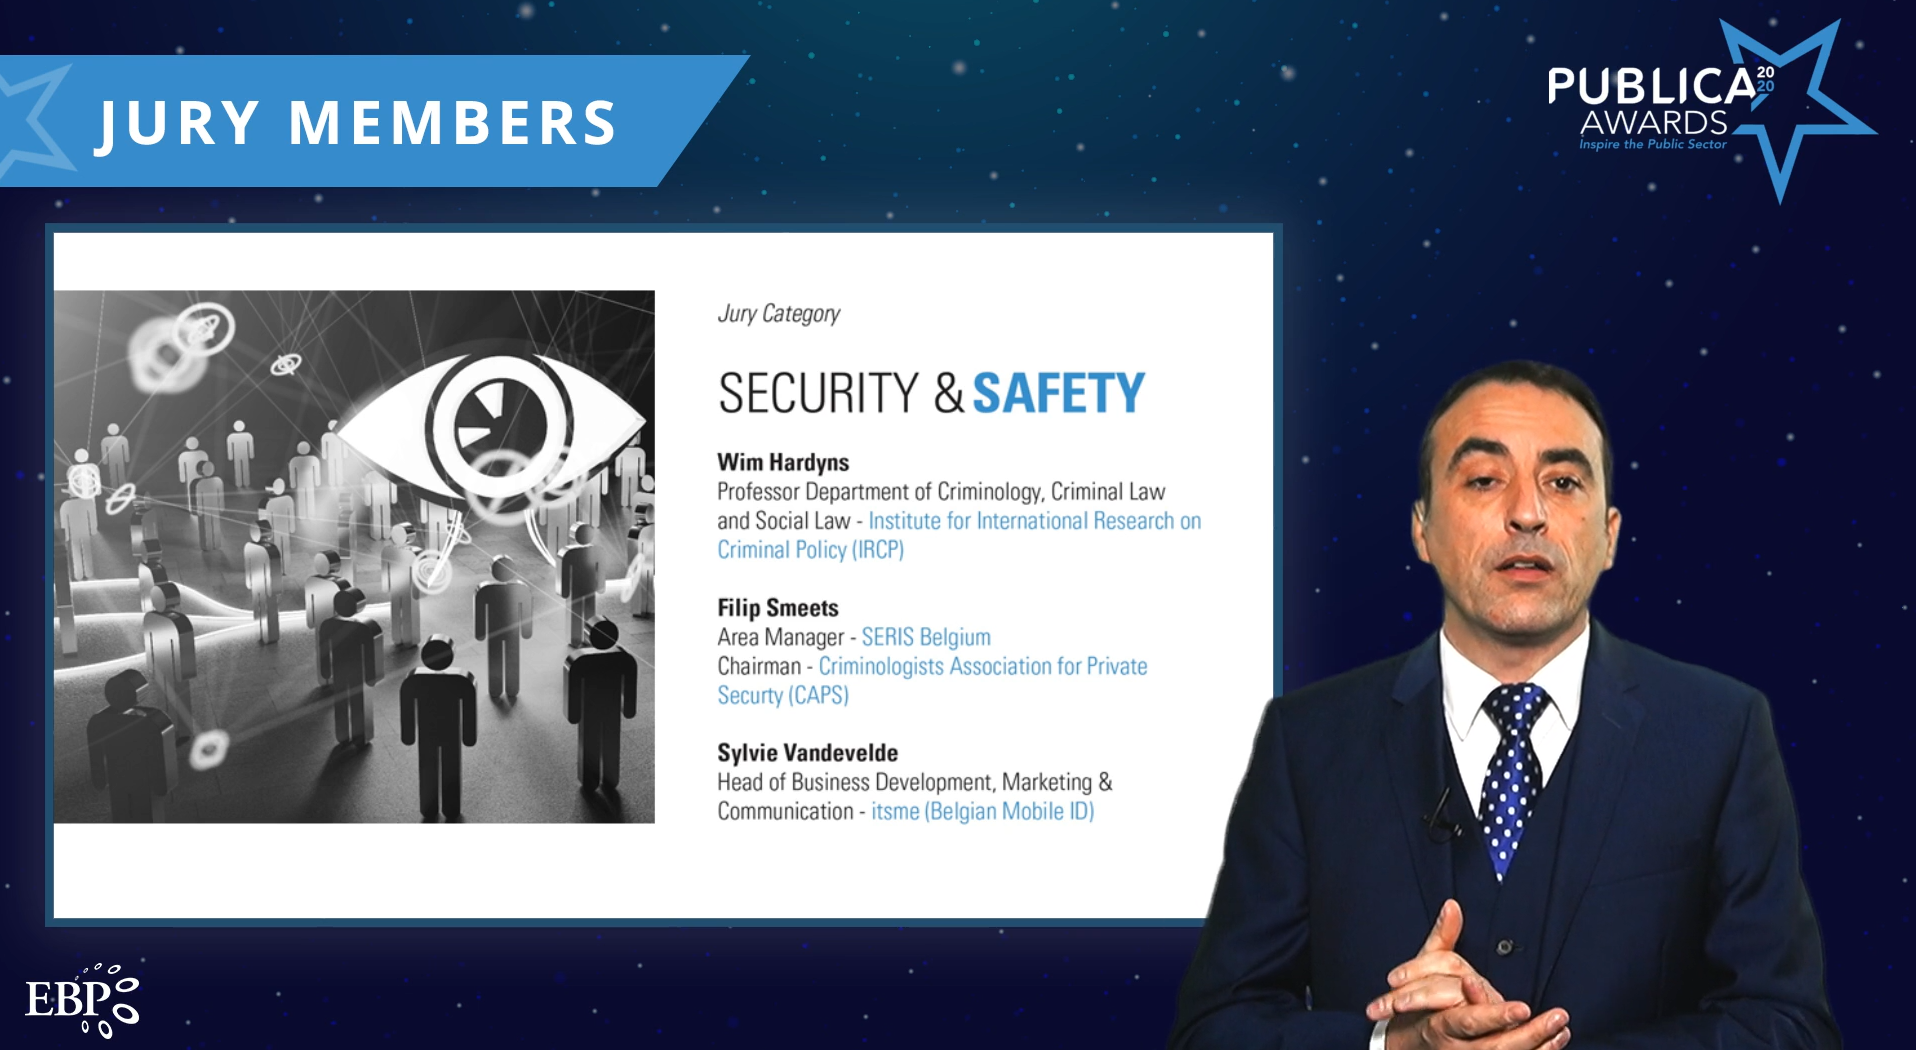 Overzicht van de Publica awards jury voor de categorie security & safety